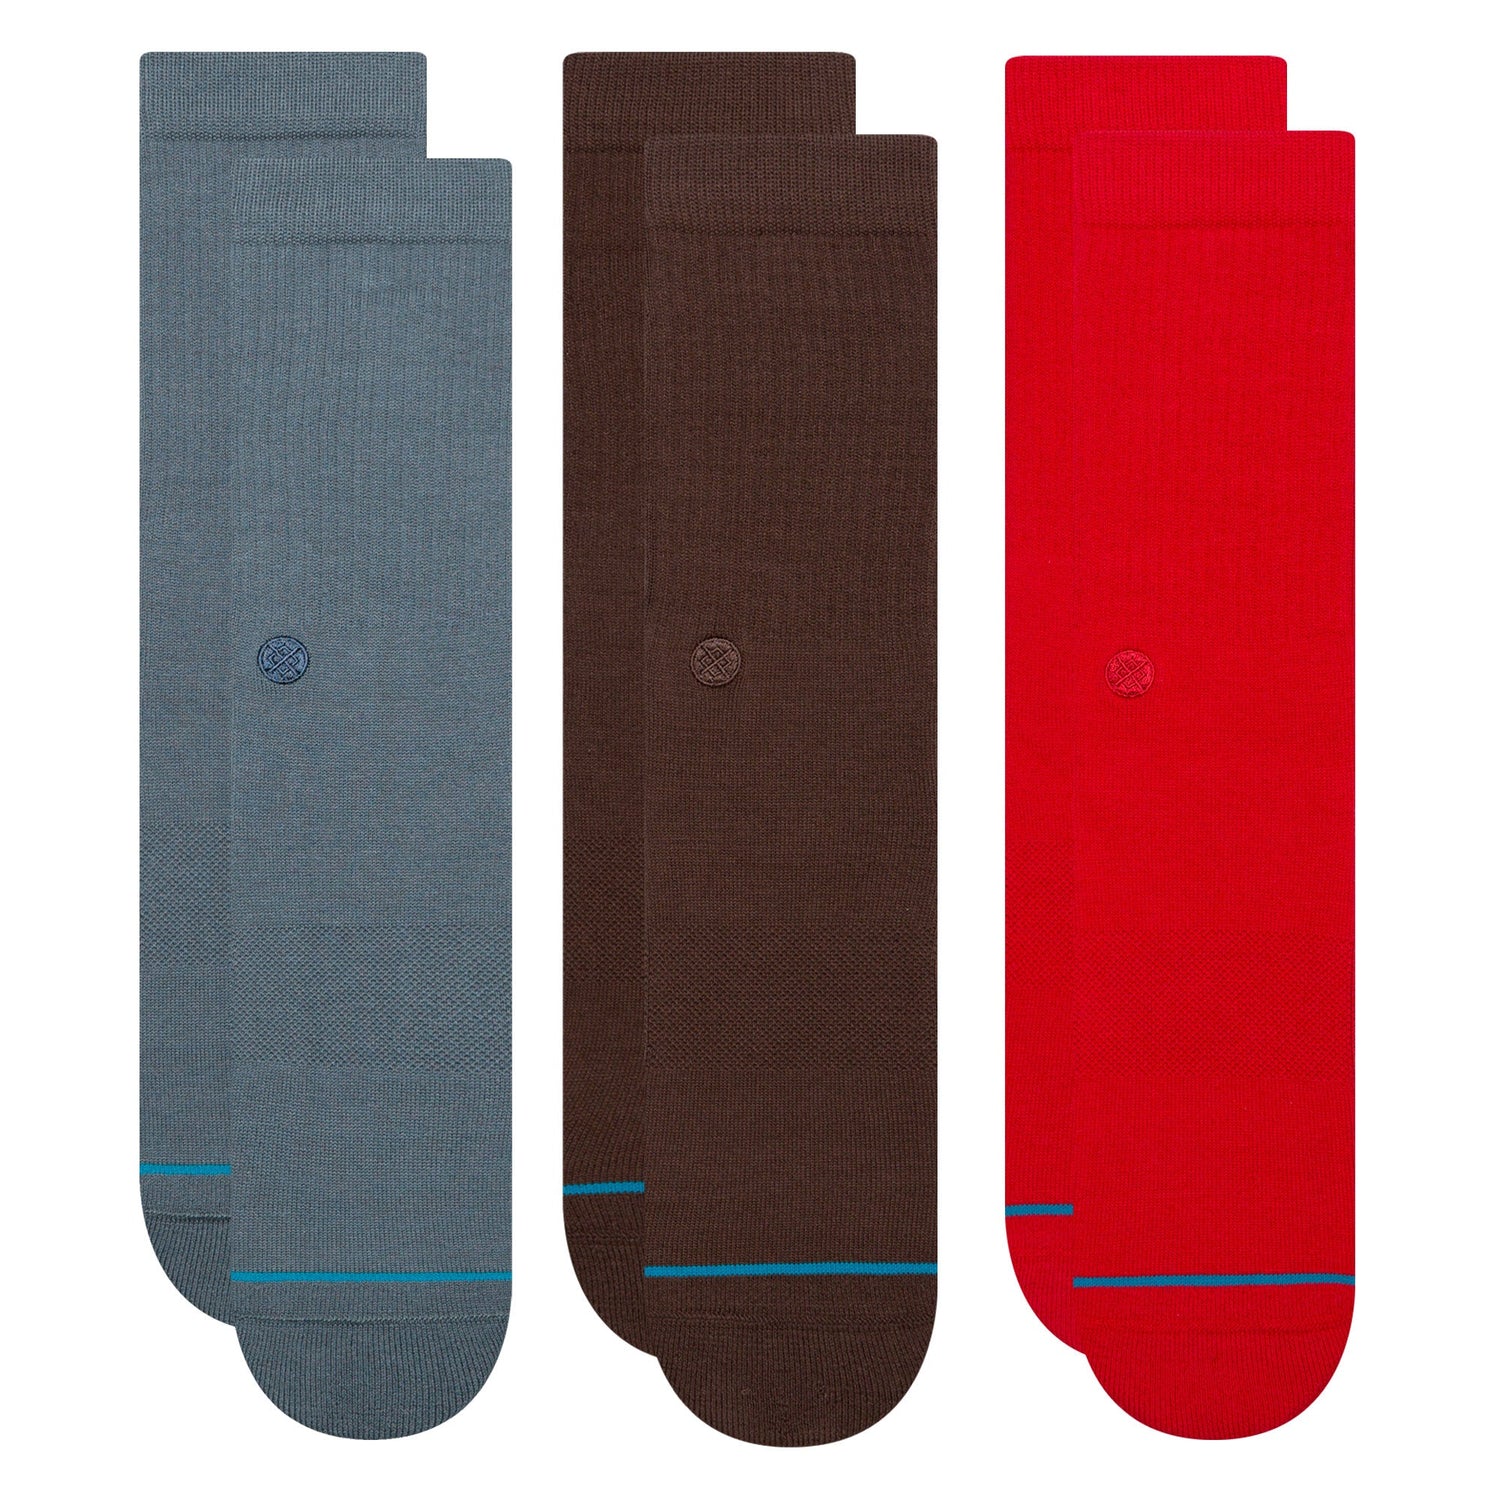 Lot de 3 paires de chaussettes mi-mollet ardoise/marron foncé/rouge foncé Icon de Stance